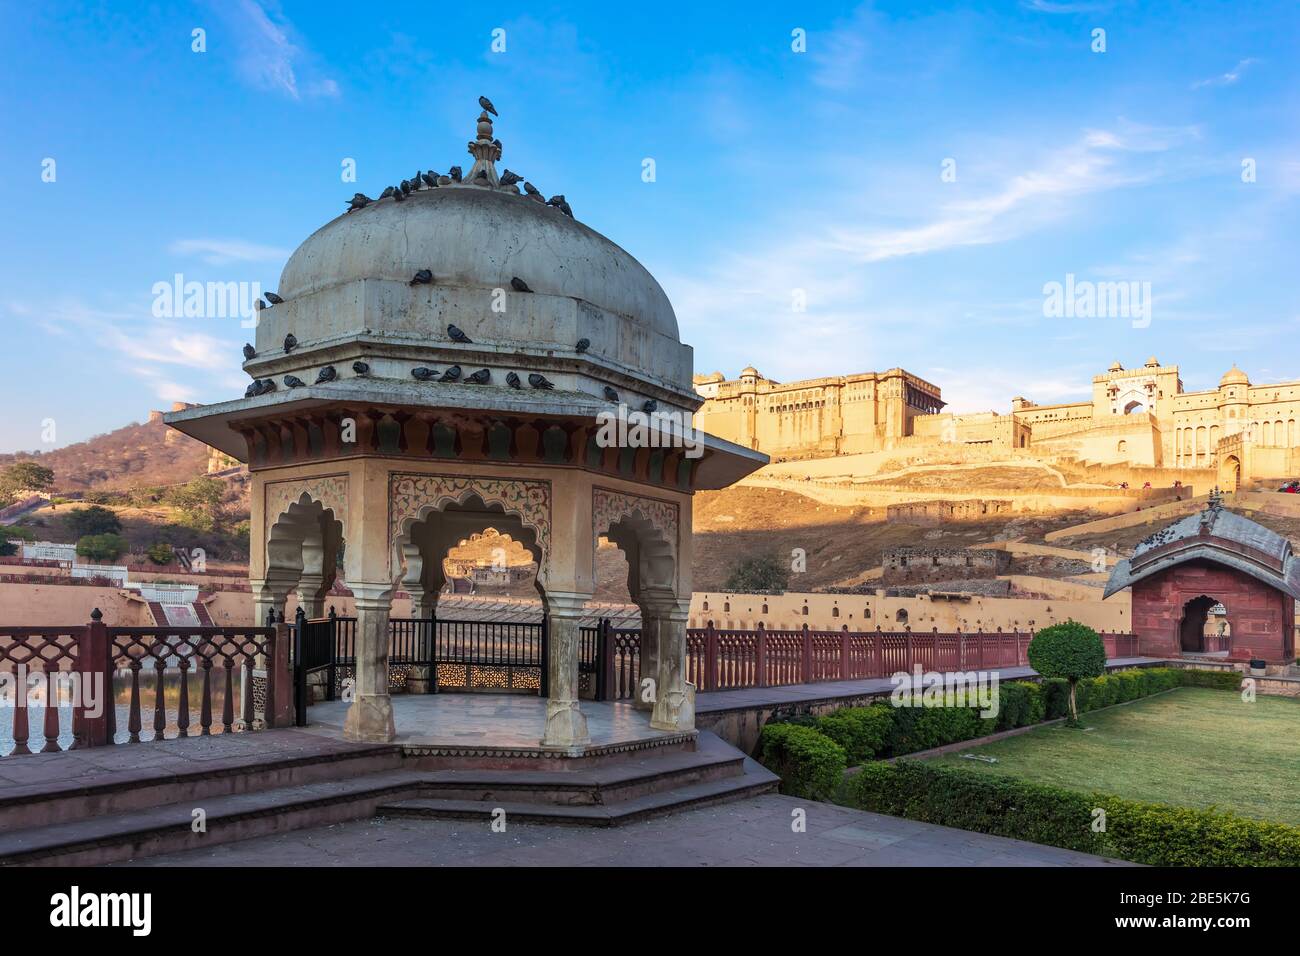 Rotonde sur le territoire de fort Amber, Amer, Jaipur, Inde Banque D'Images